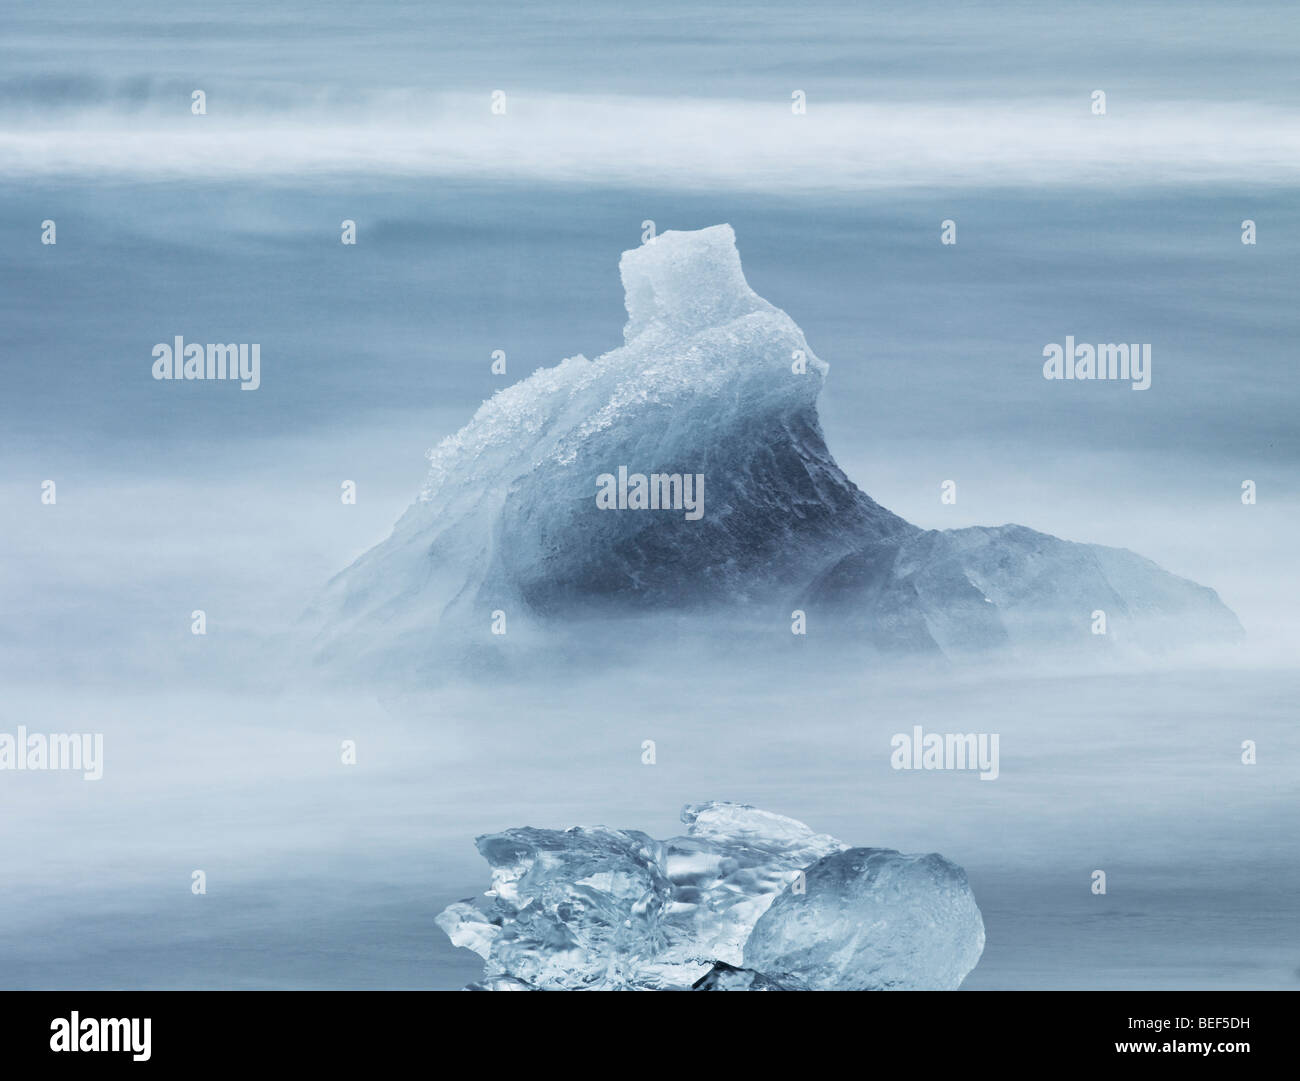 Formations de glace du Breidamerkurjokull, calotte de glace, l'Islande Vatnajokull Banque D'Images